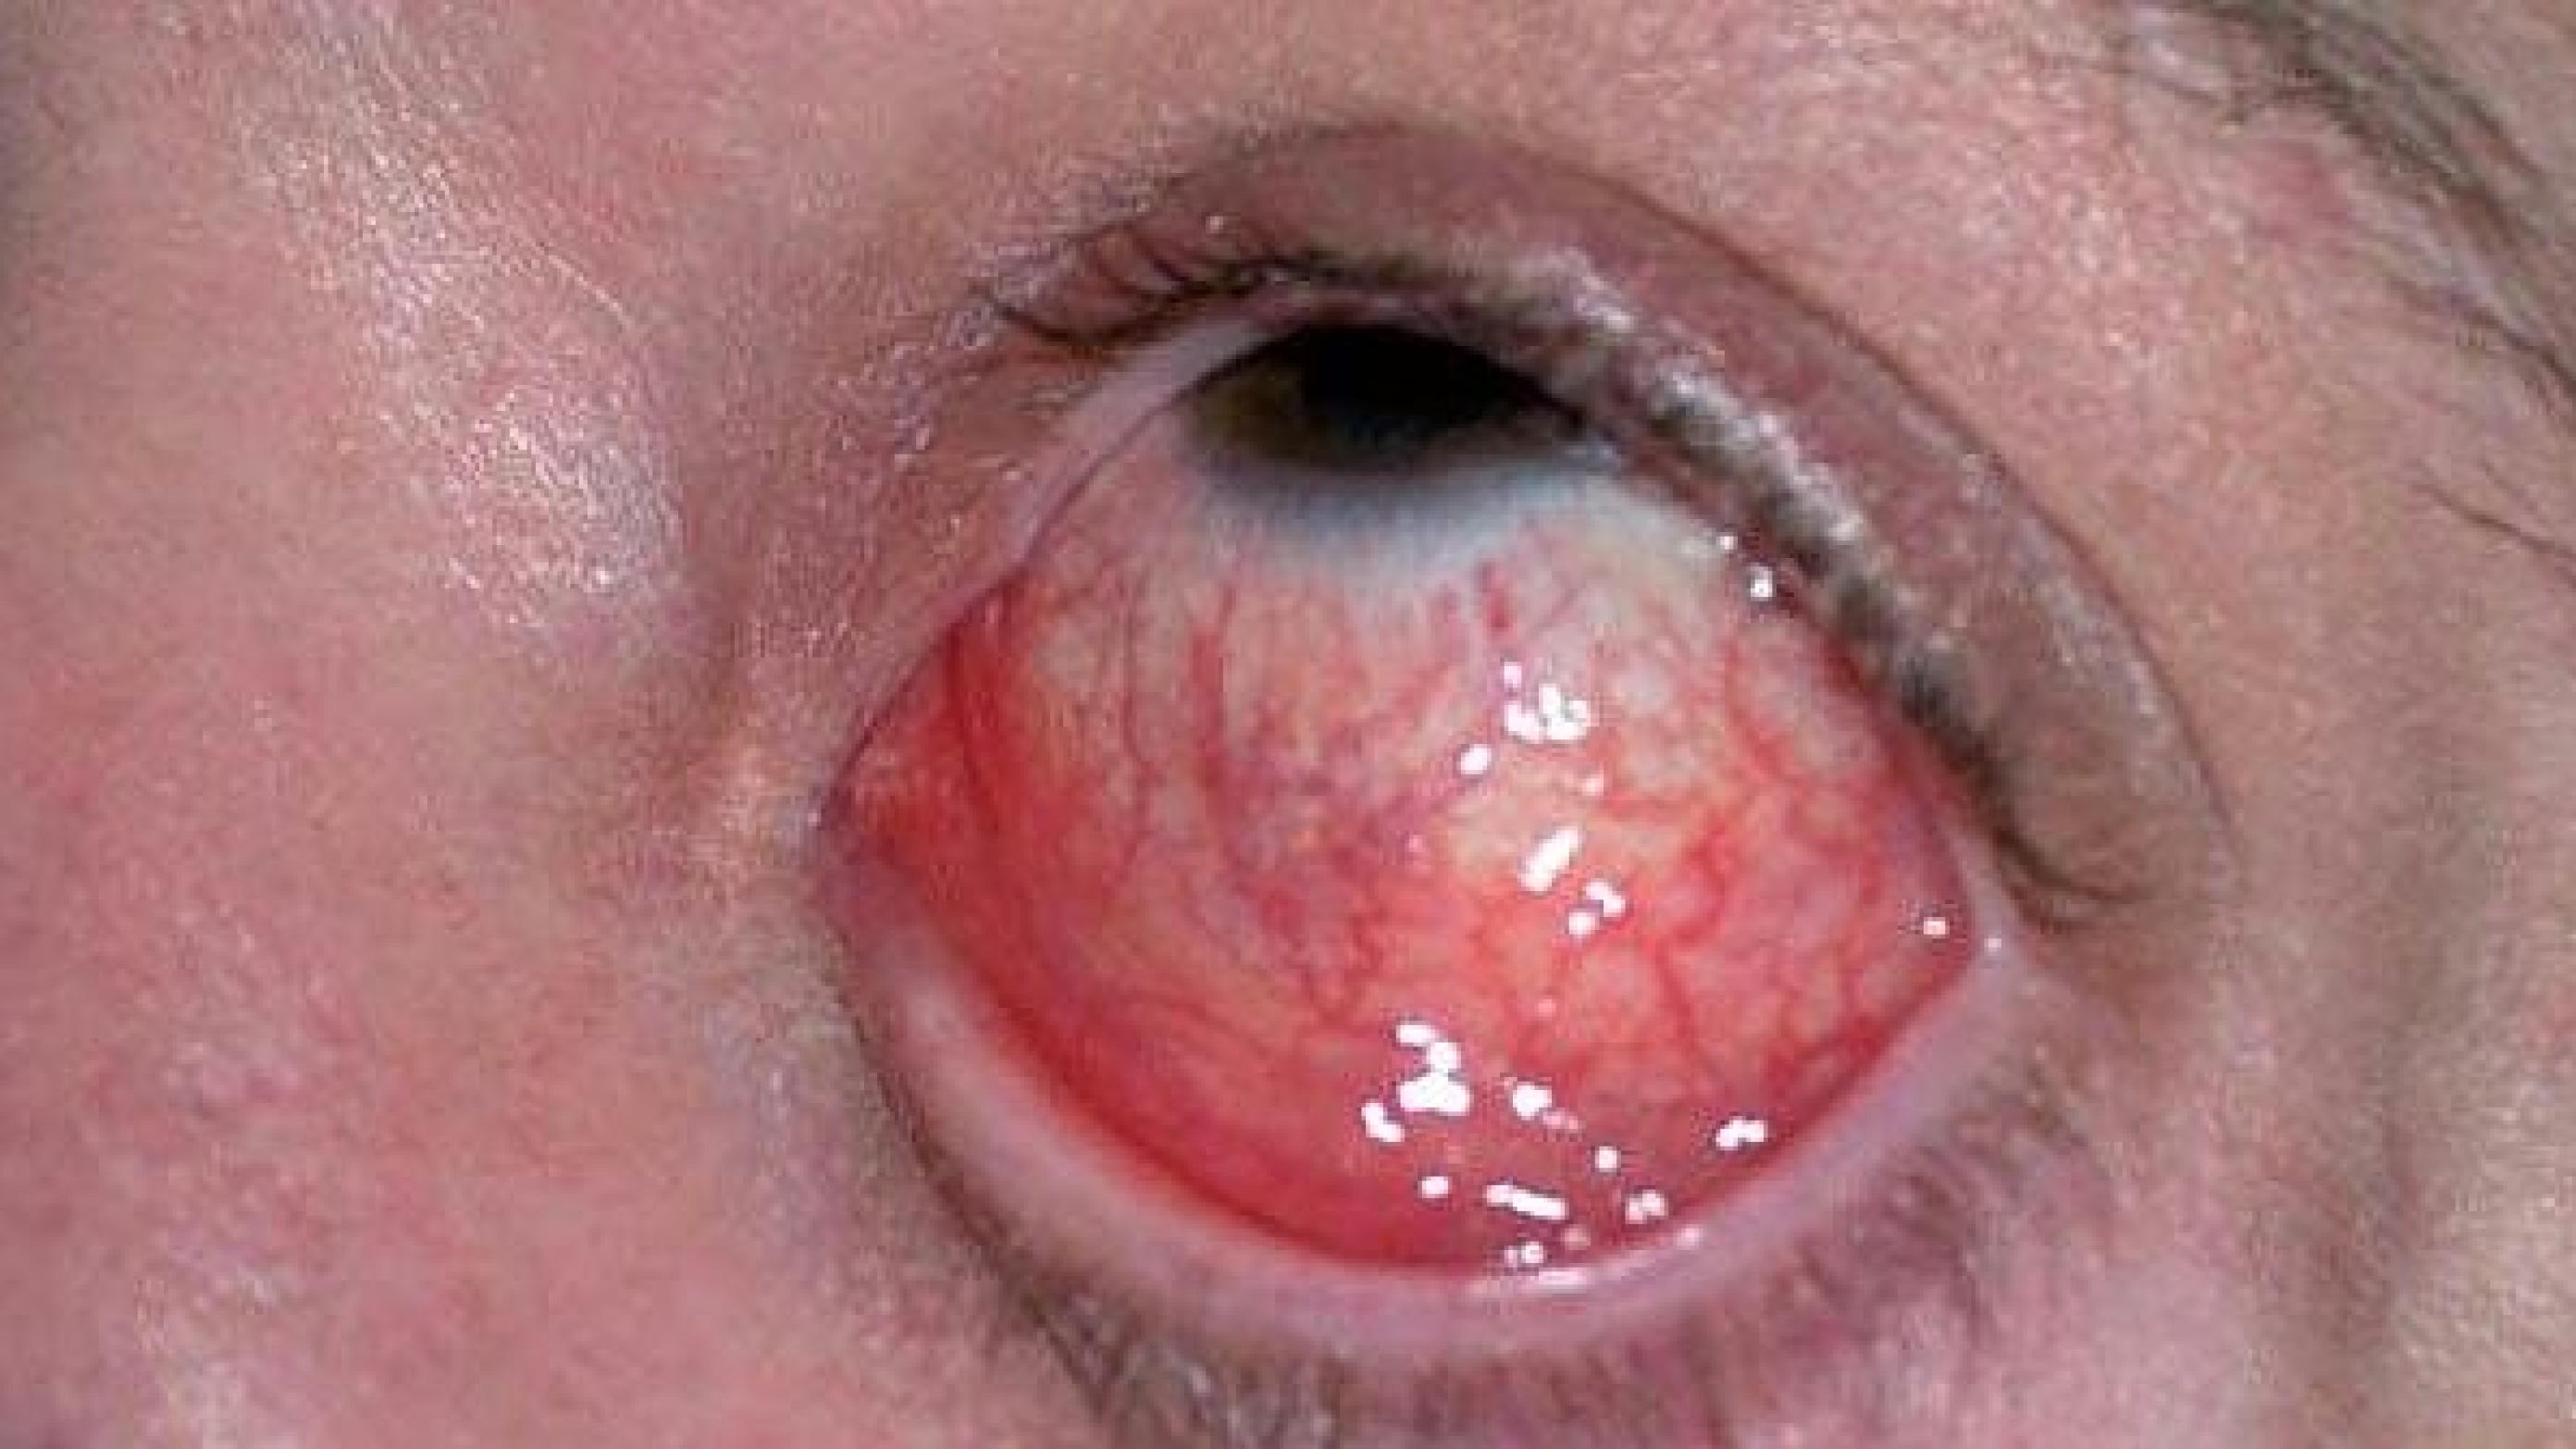 Øjenbetændelse (conjunctivitis) forårsaget af Neisseria gonorrhoeae.